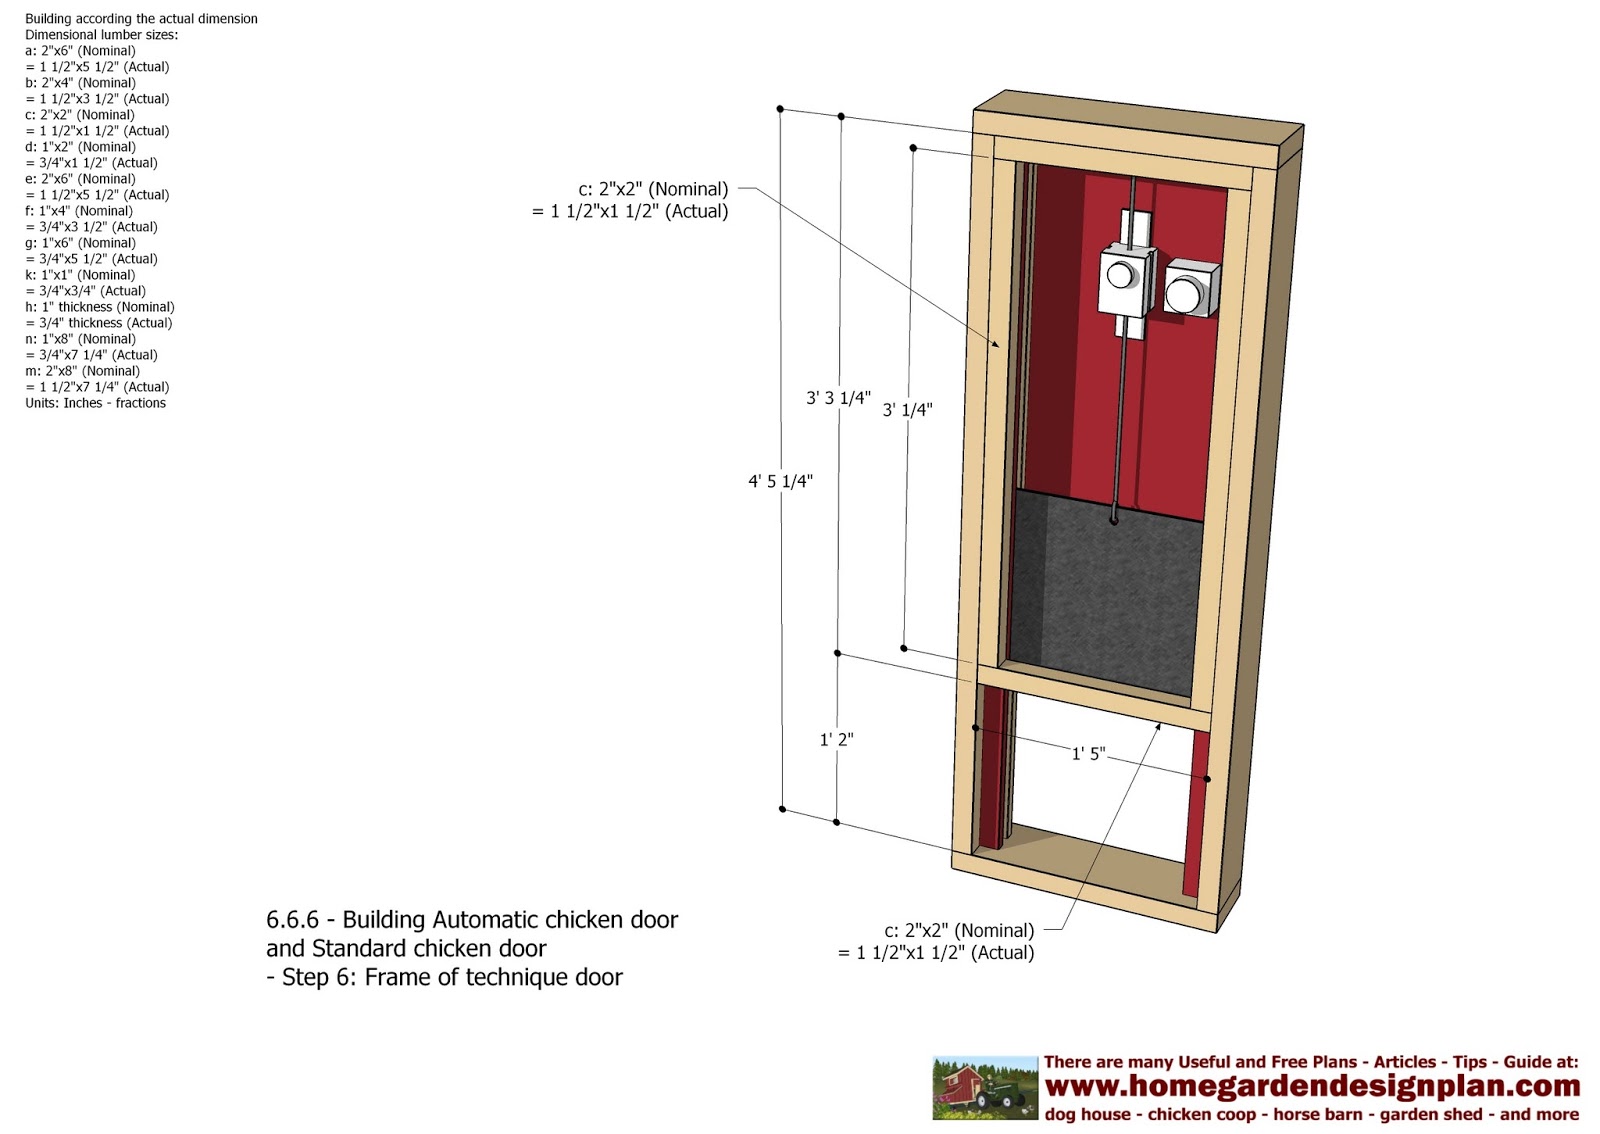 home garden plans: Automatic Chicken Coop Door - Chicken Coop Plans 